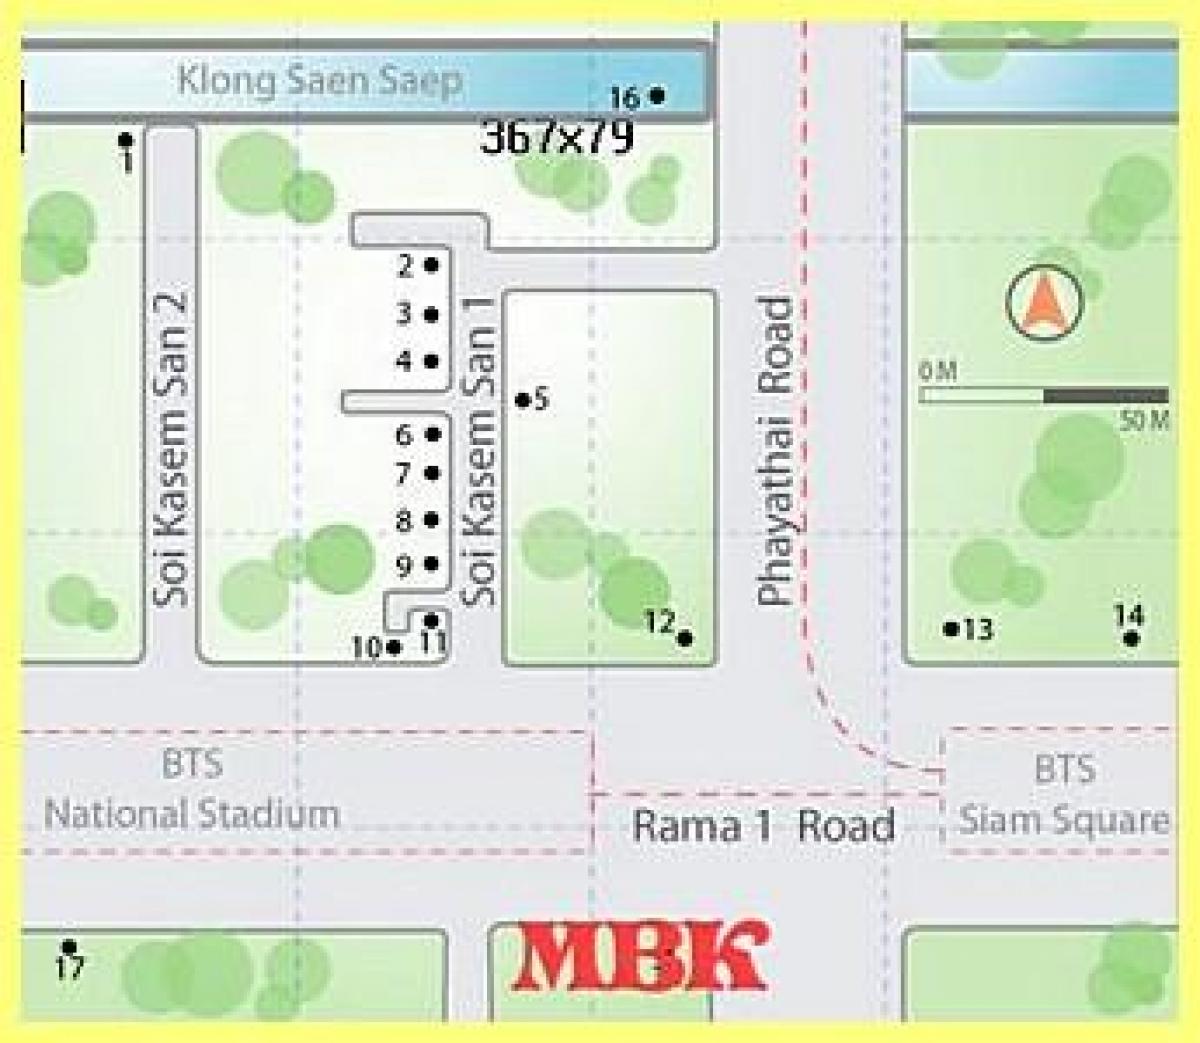 mbk трговски центар во бангкок мапа